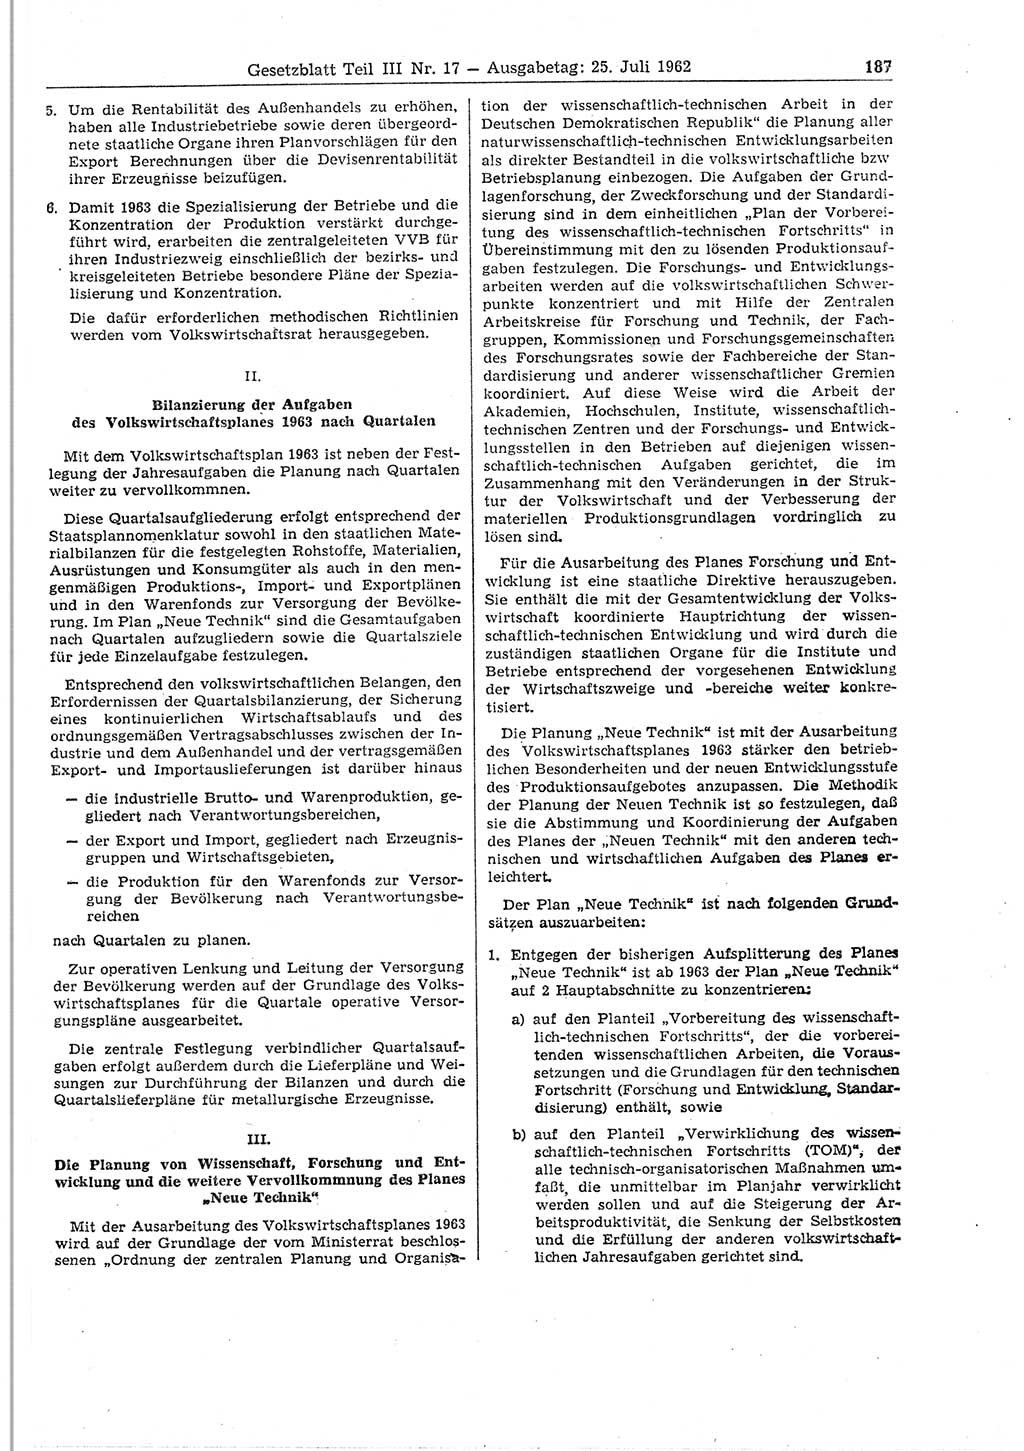 Gesetzblatt (GBl.) der Deutschen Demokratischen Republik (DDR) Teil ⅠⅠⅠ 1962, Seite 187 (GBl. DDR ⅠⅠⅠ 1962, S. 187)